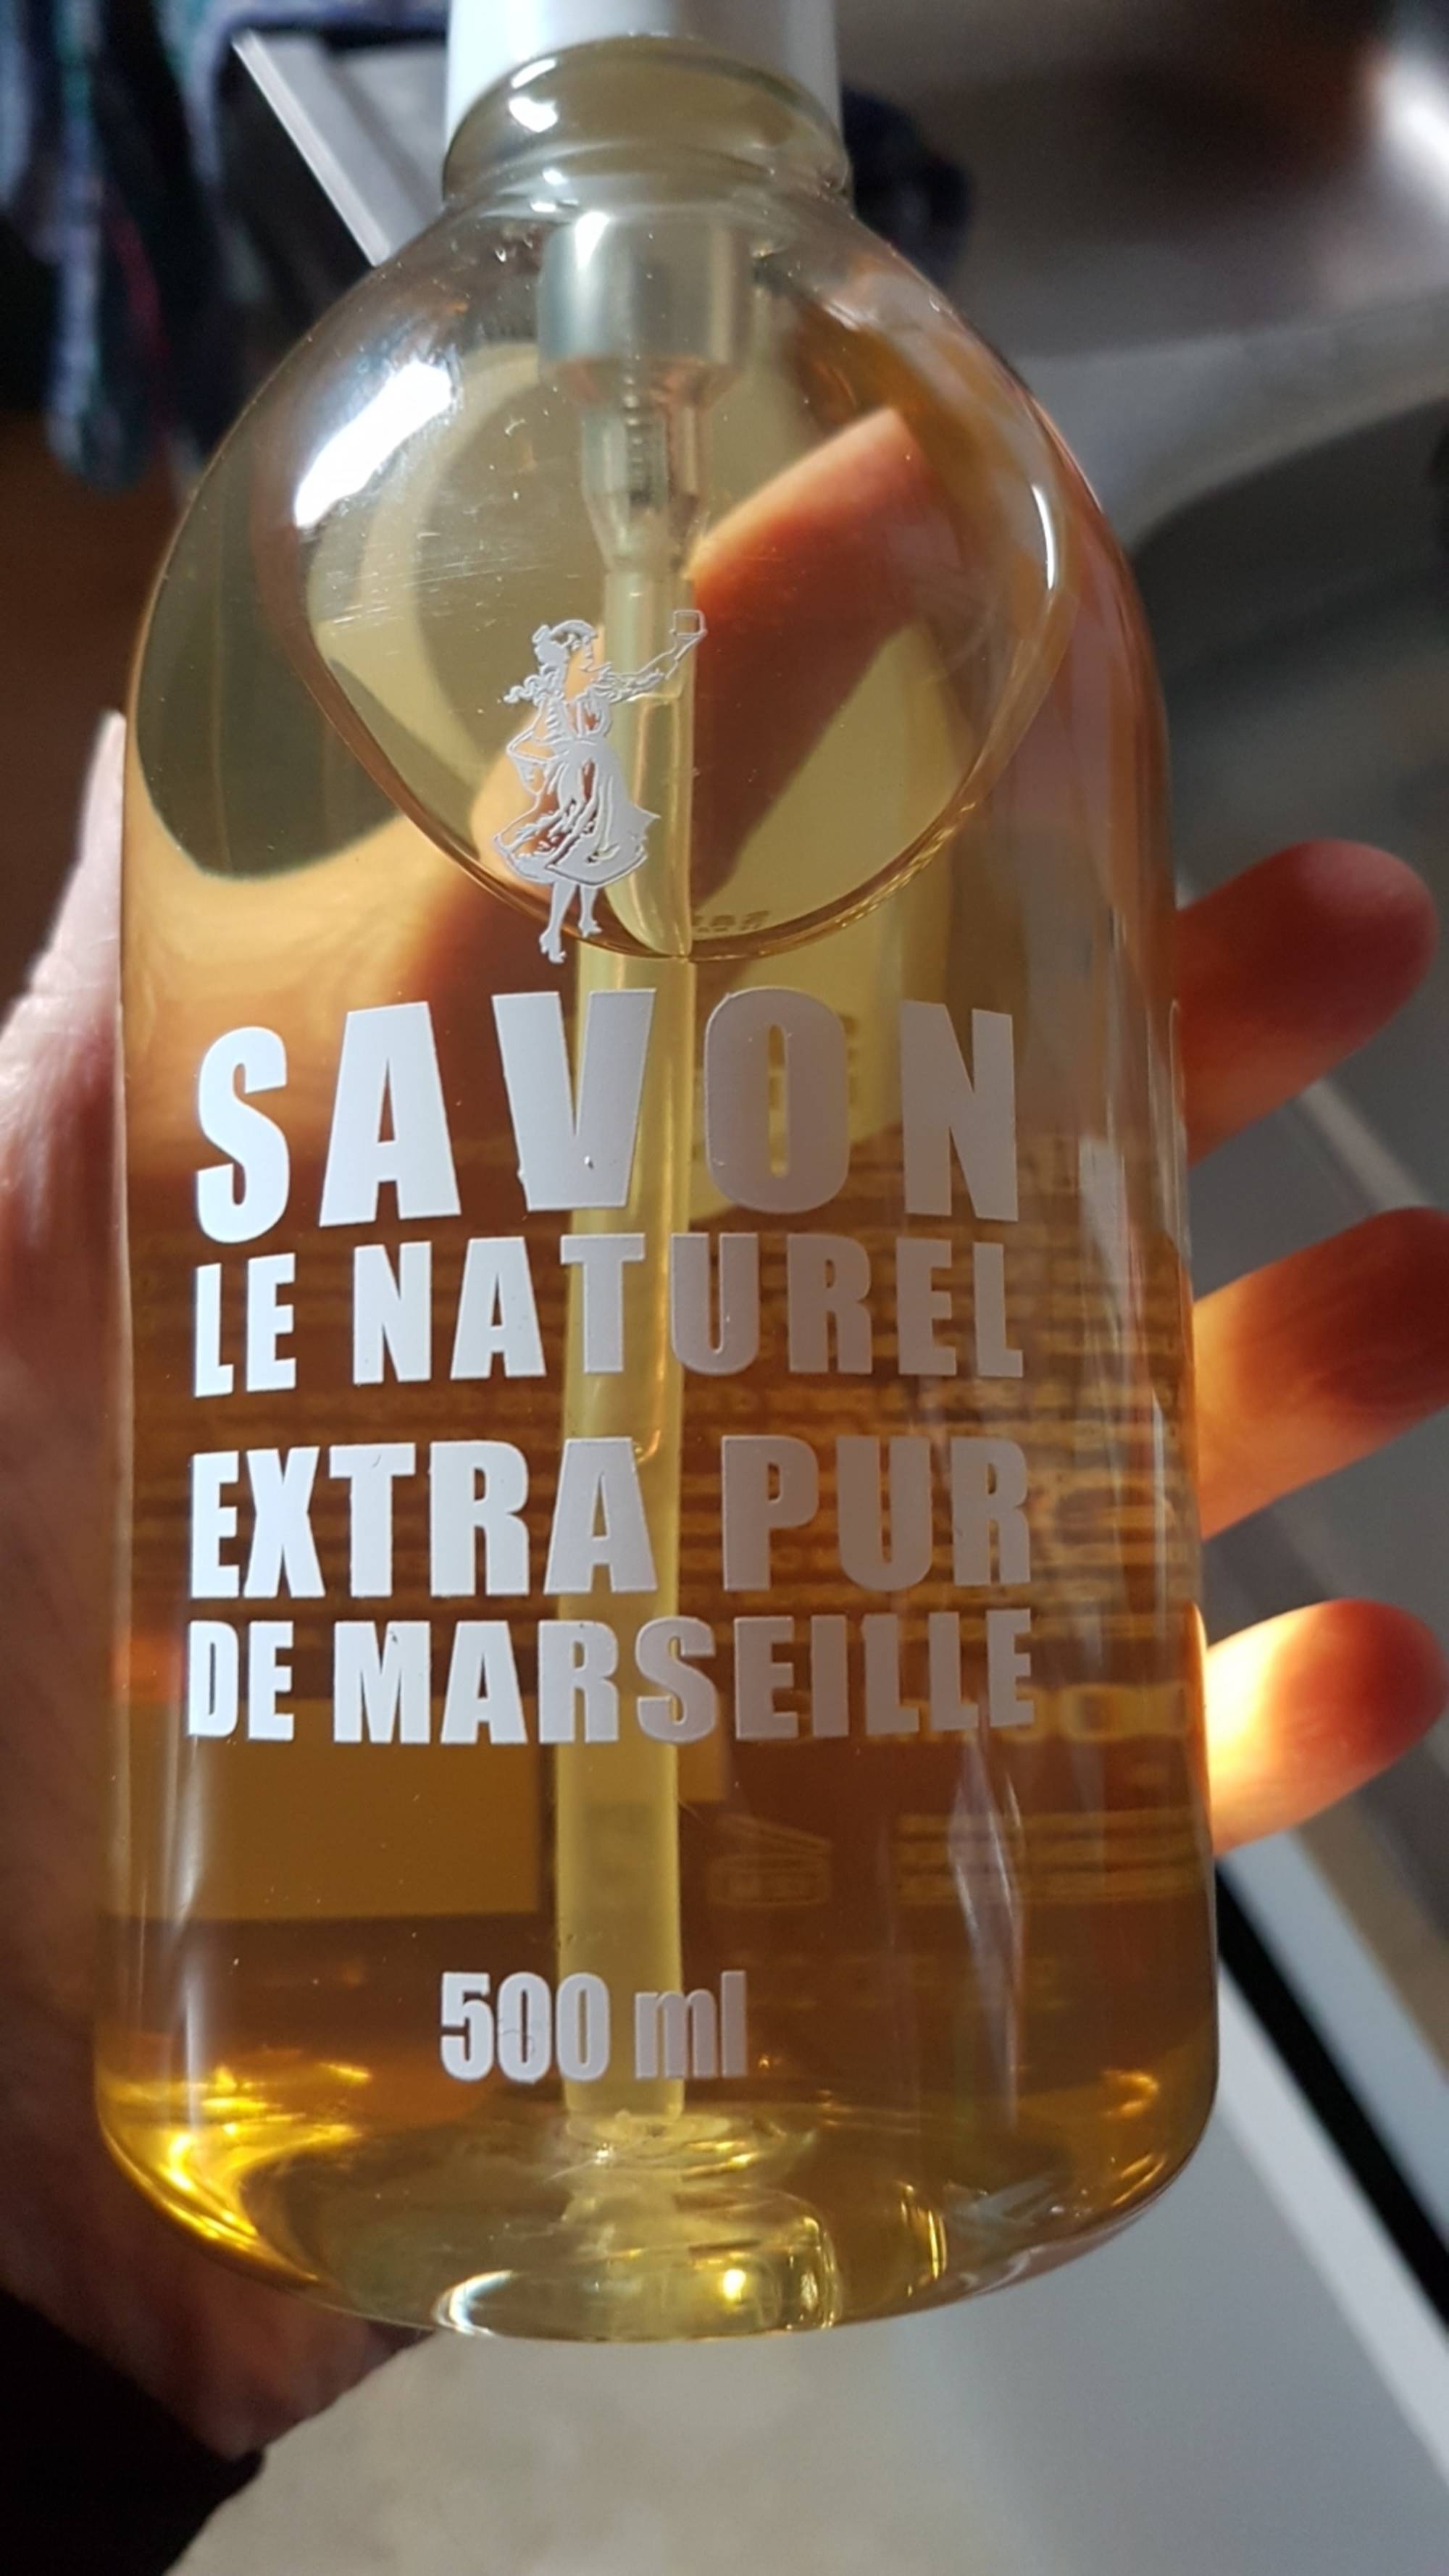 Savon Le Naturel Extra Pur de Marseille à l'Huile d'Olive, 500ml